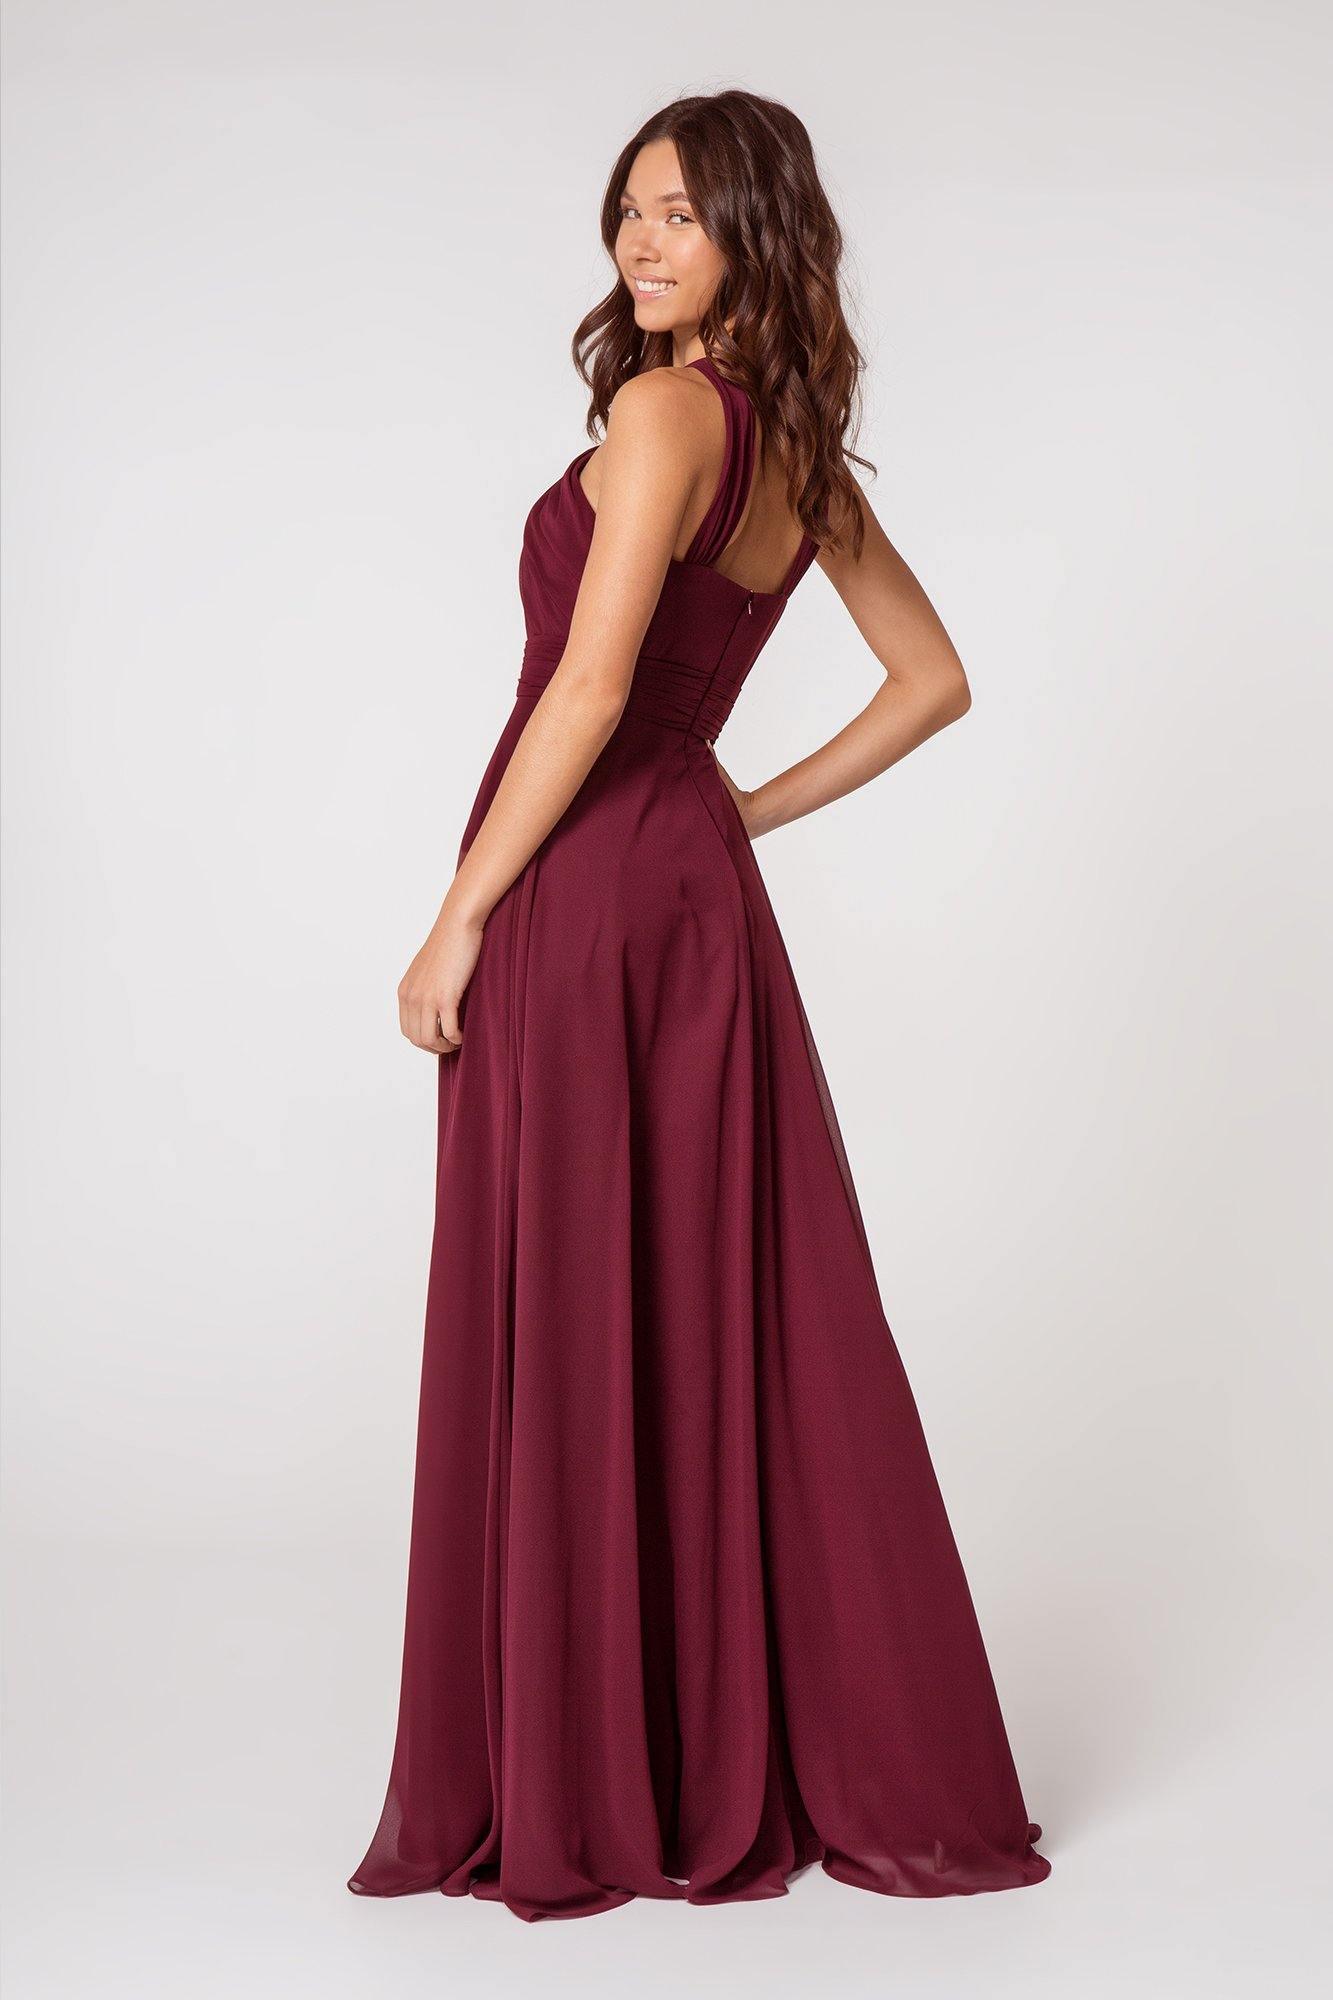 Halter Long Formal Dress Sale - The Dress Outlet